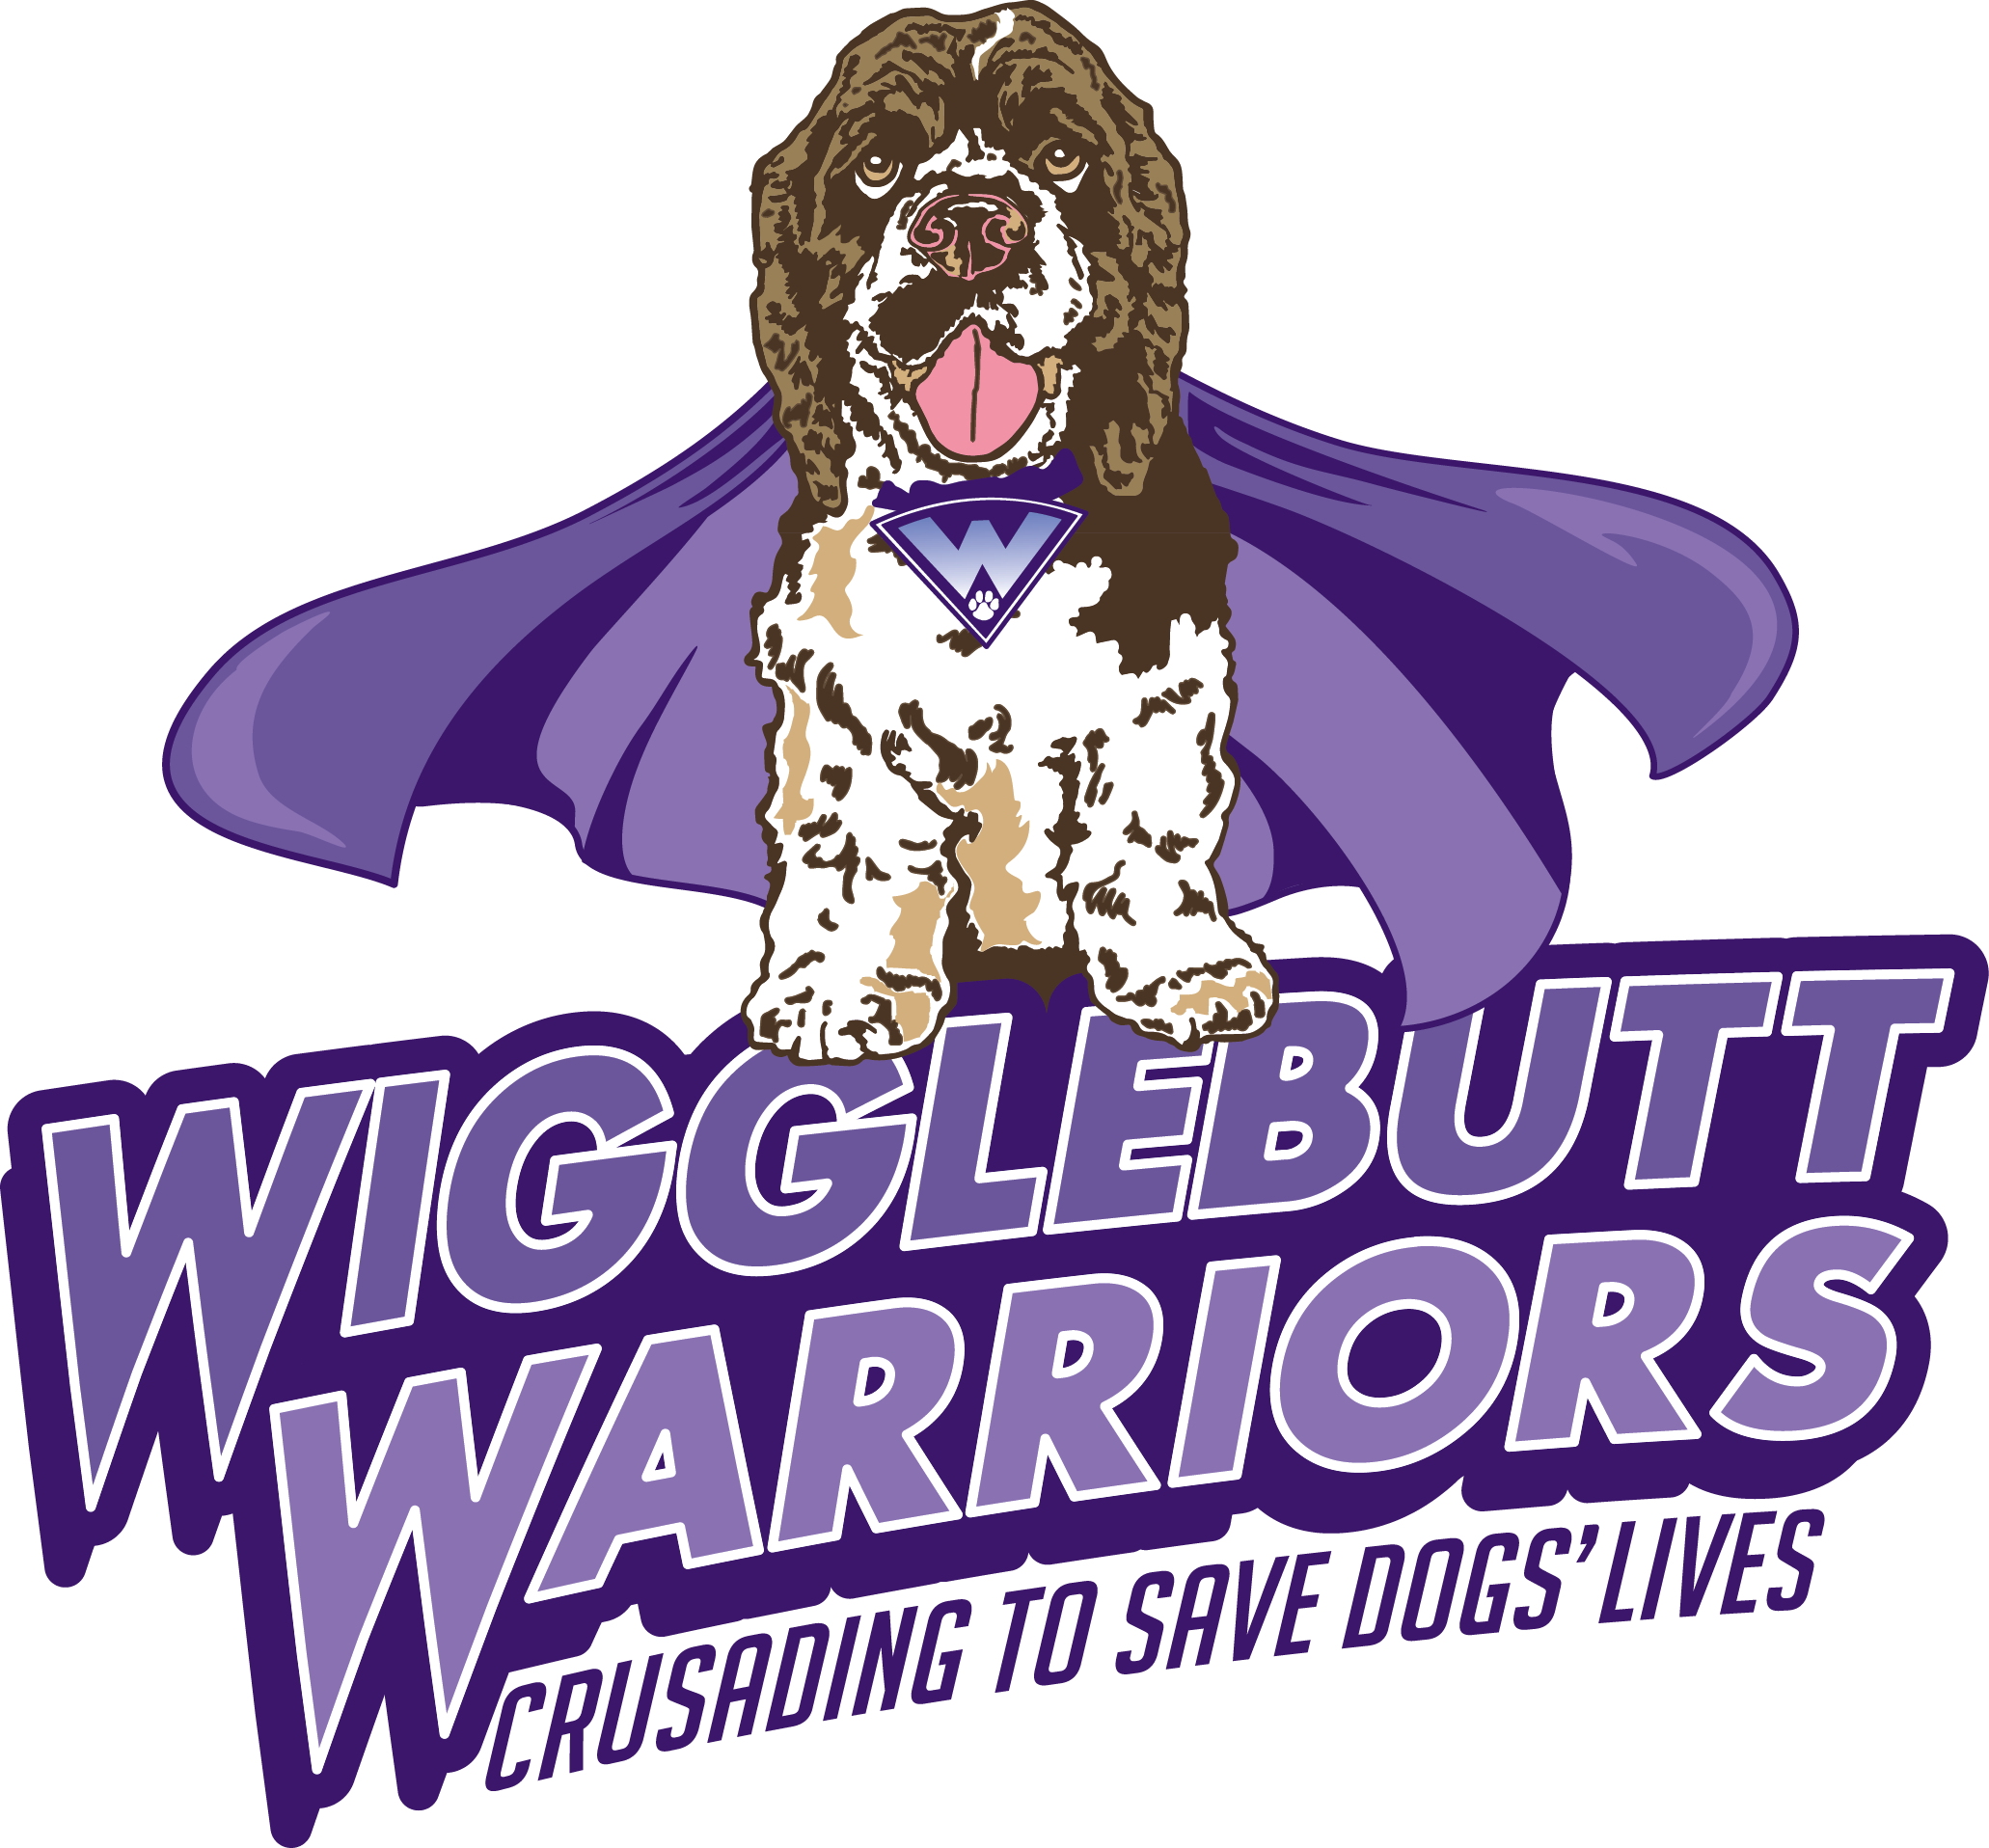 Wigglebutt Warriors